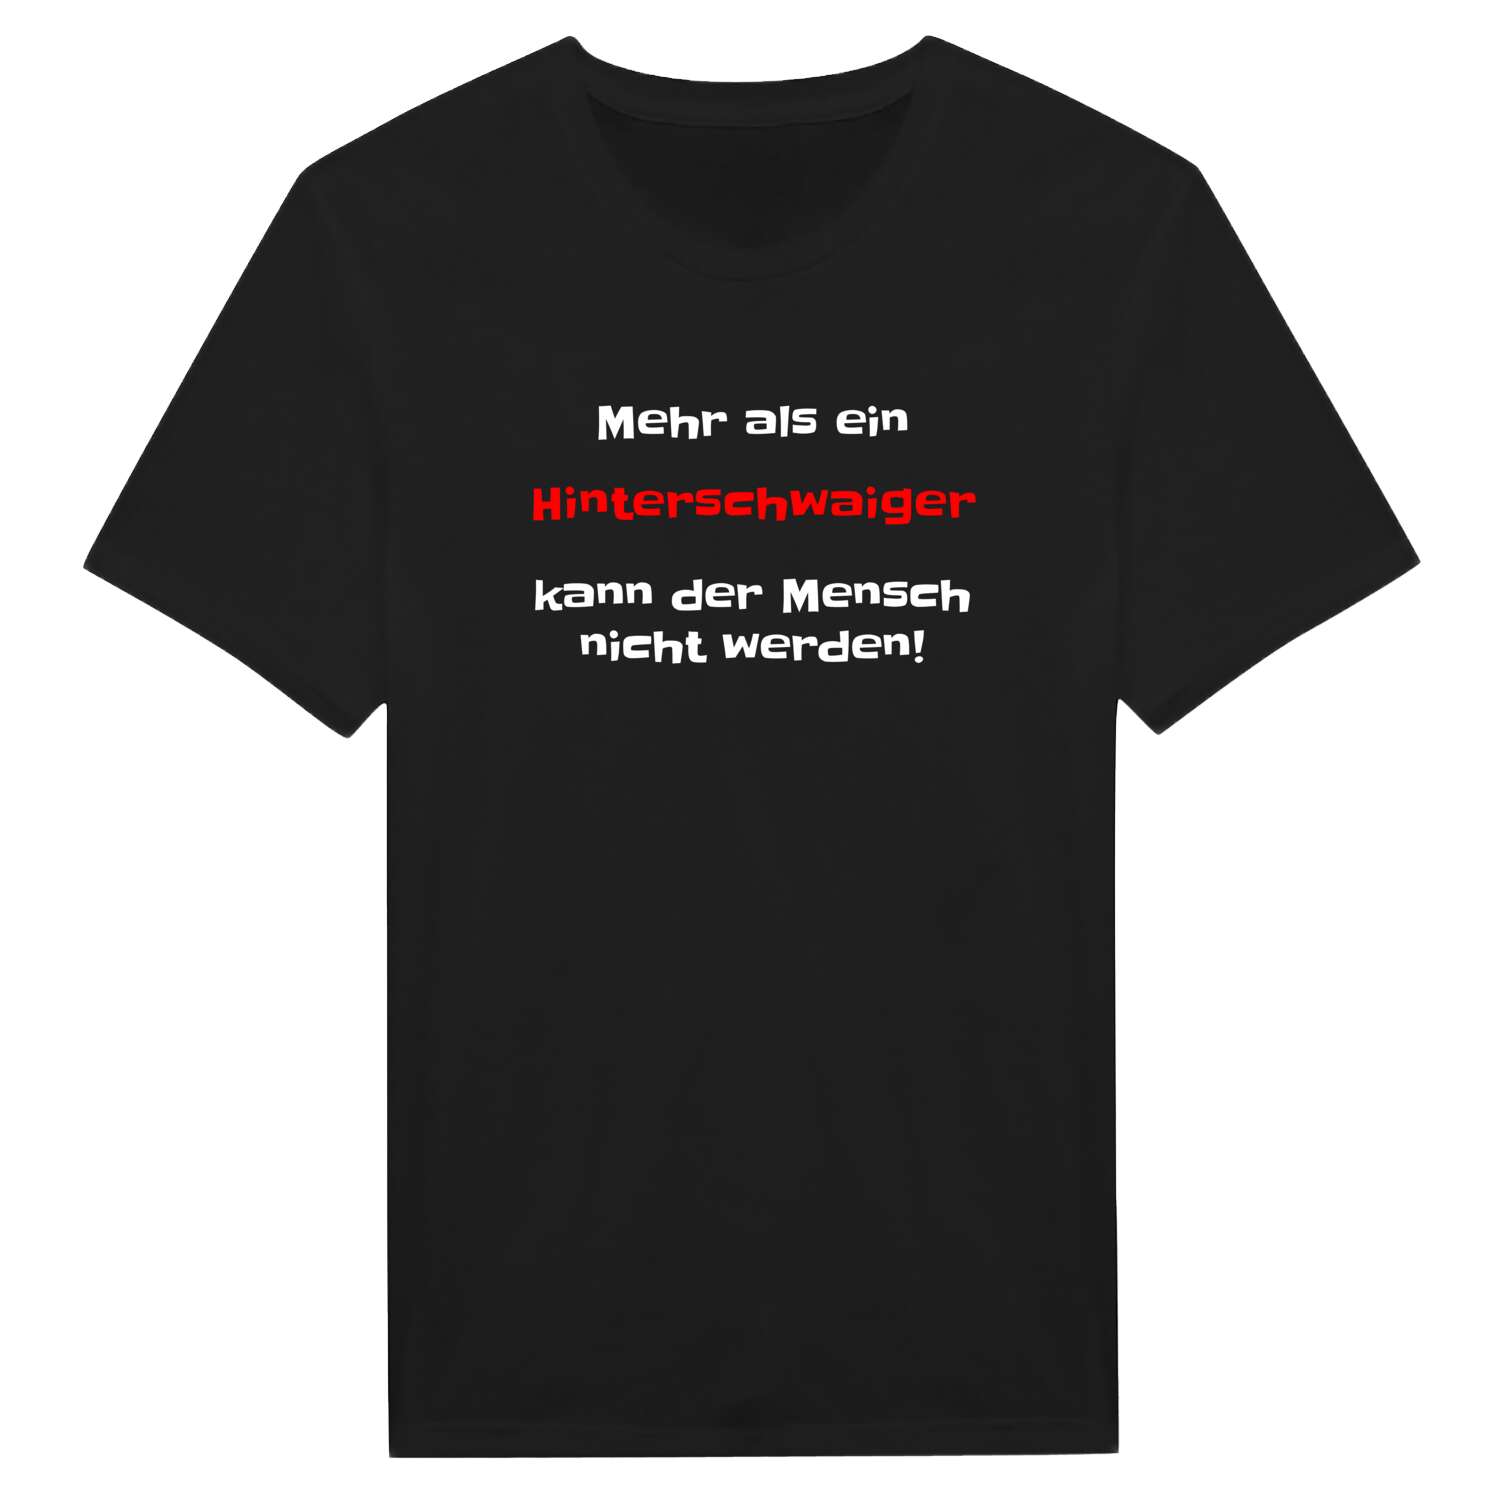 Hinterschwaig T-Shirt »Mehr als ein«